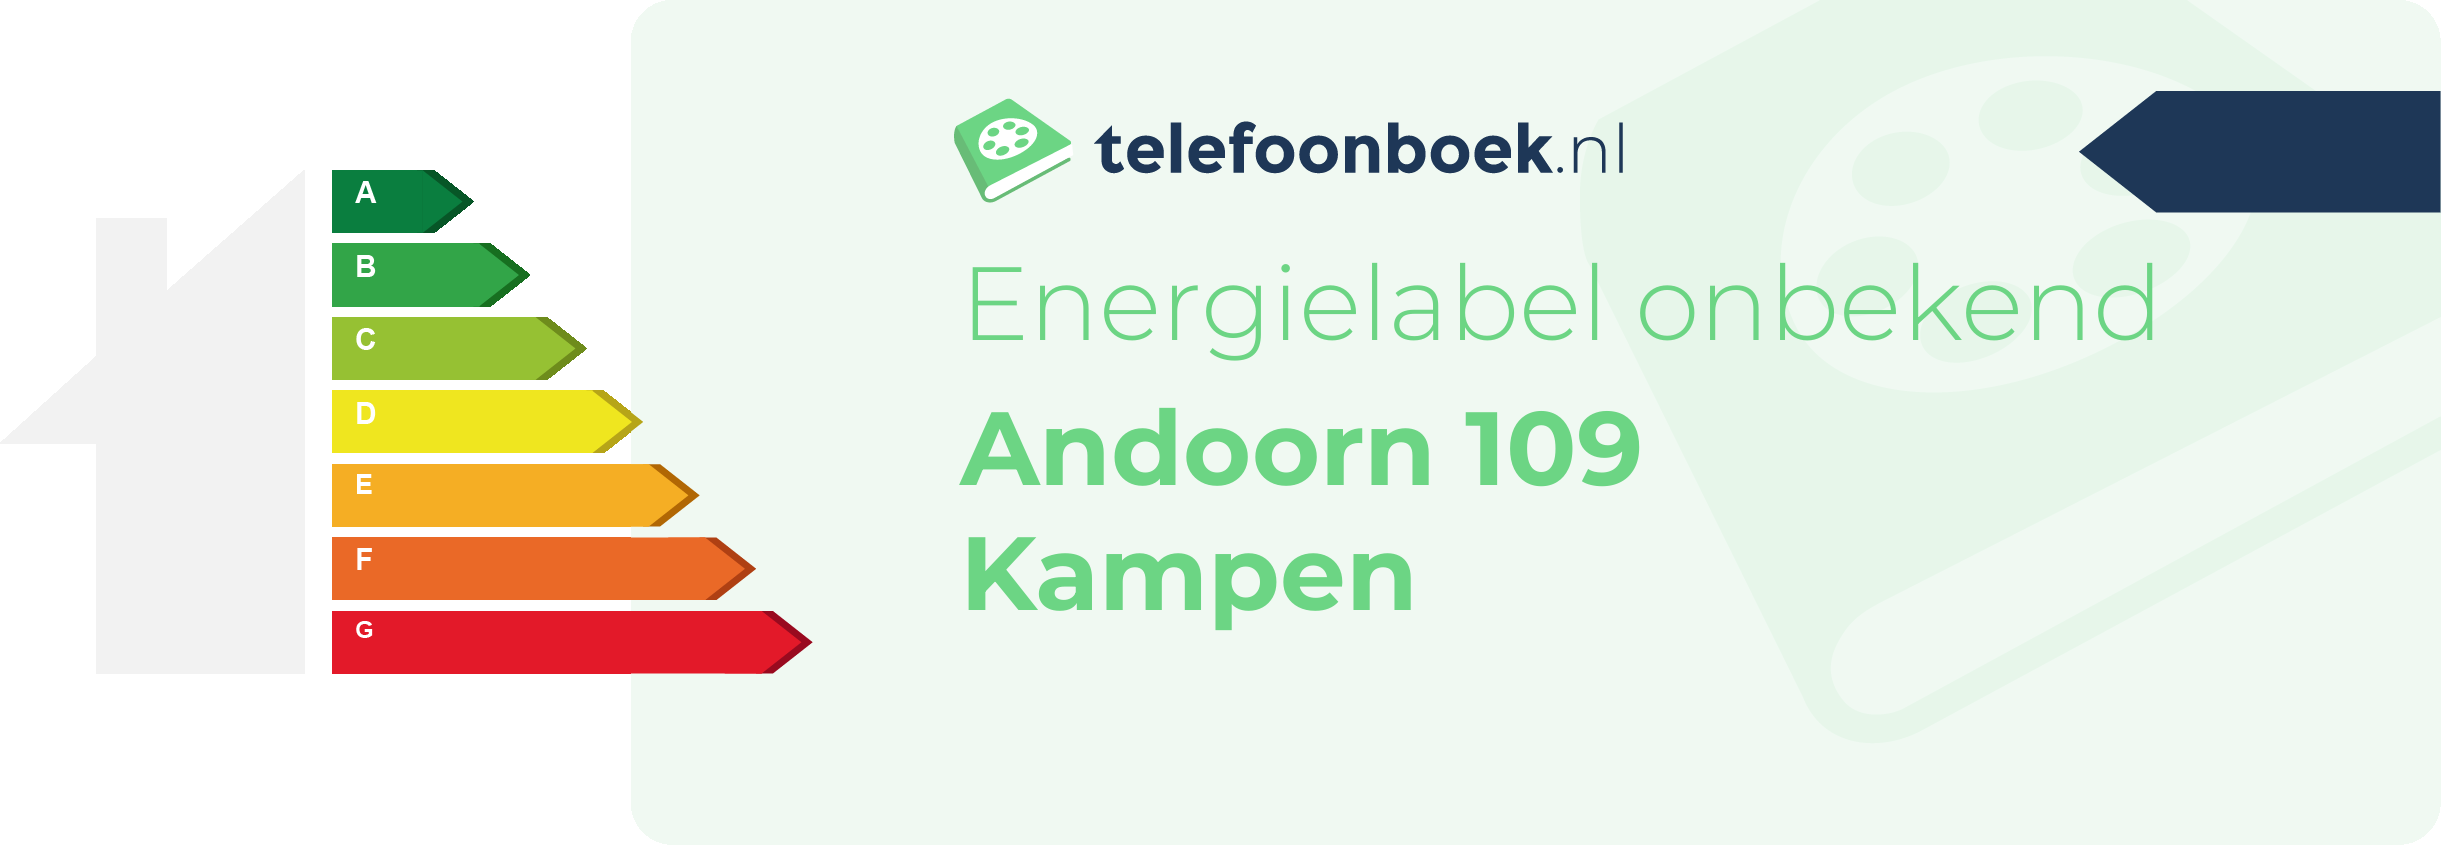 Energielabel Andoorn 109 Kampen